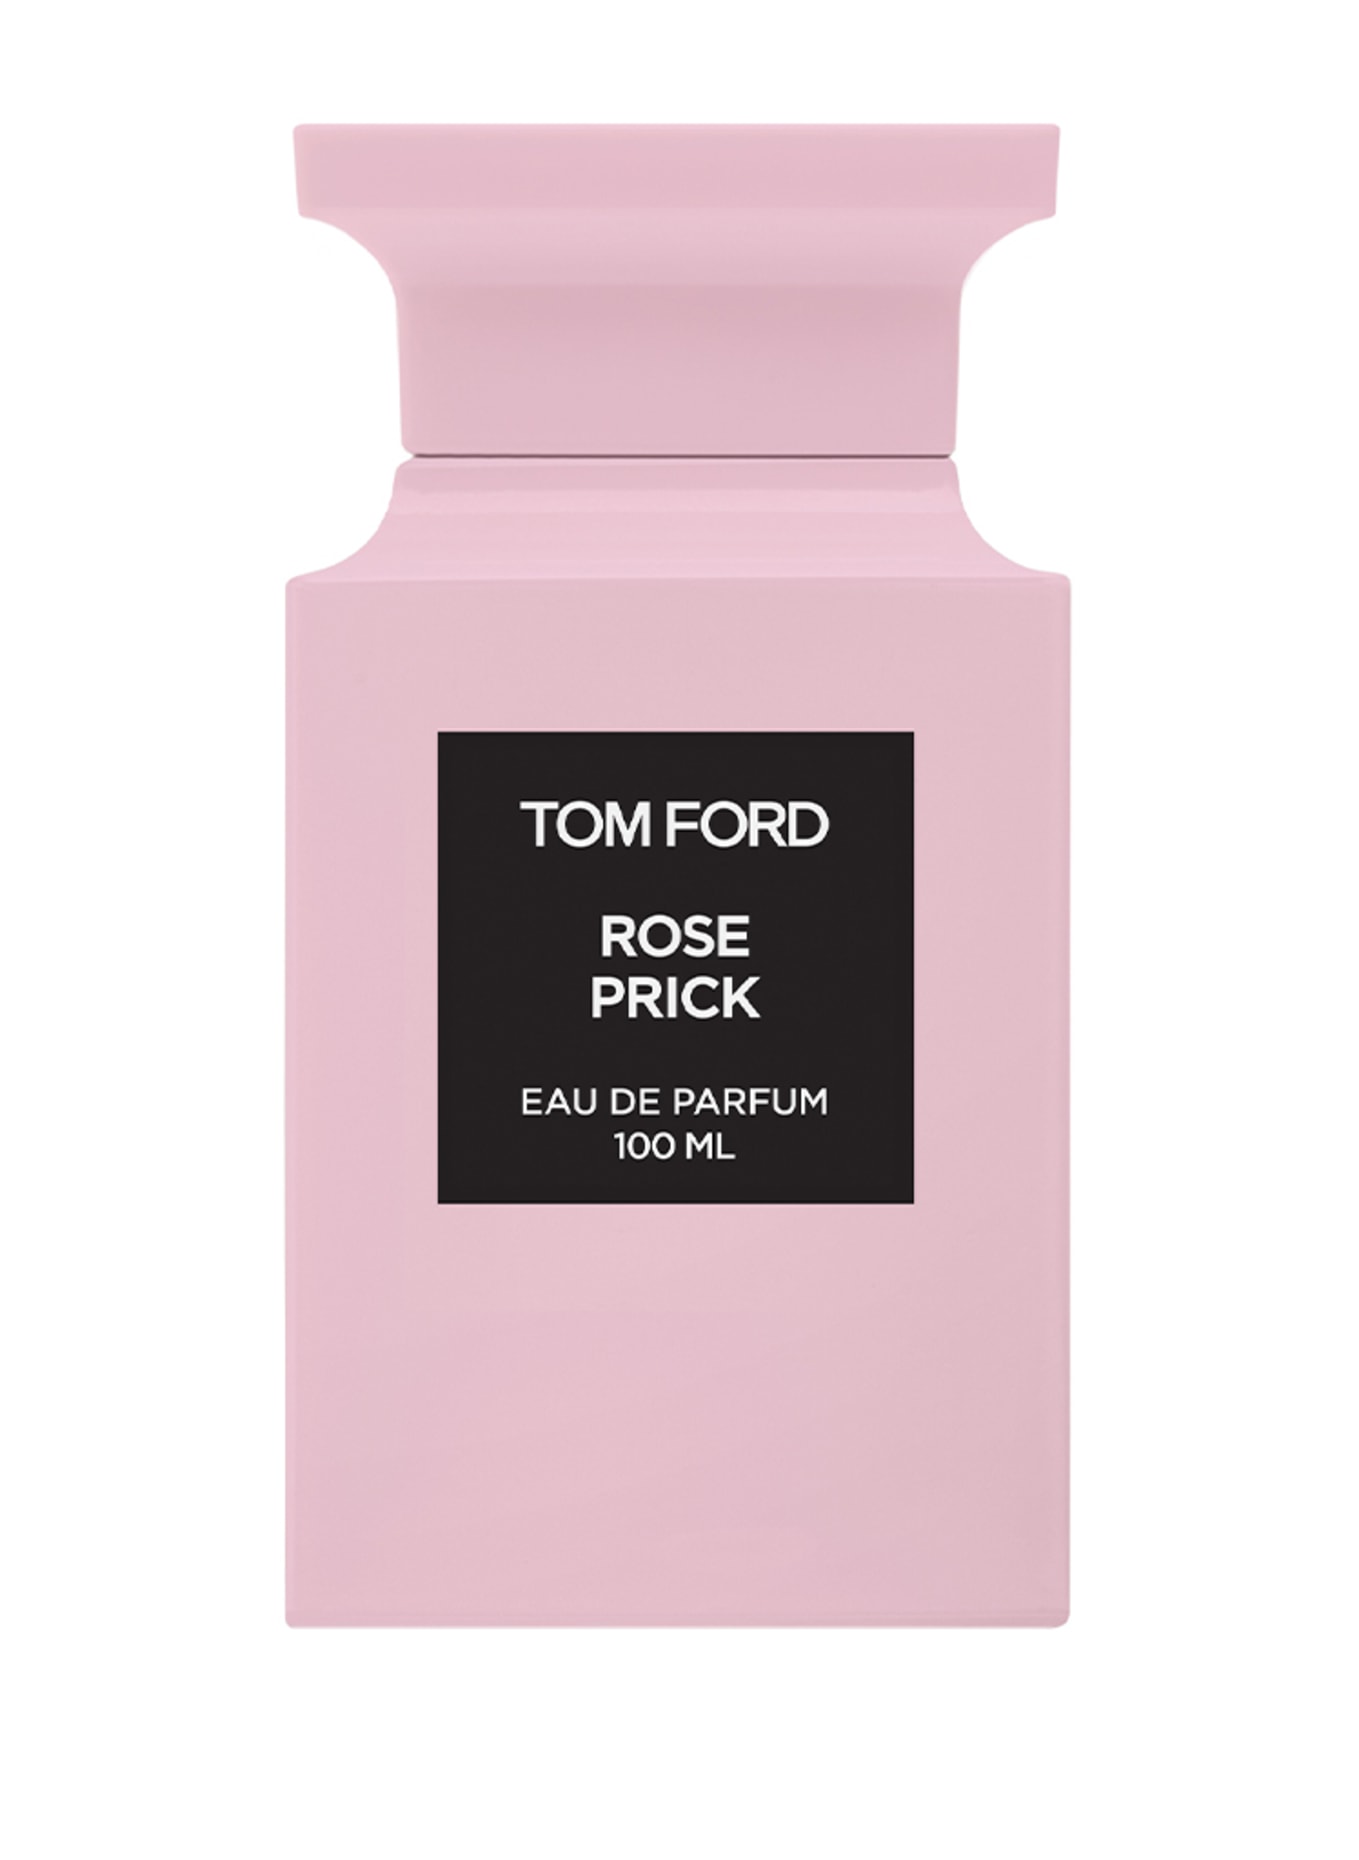 TOM FORD BEAUTY ROSE PRICK(Bild null)